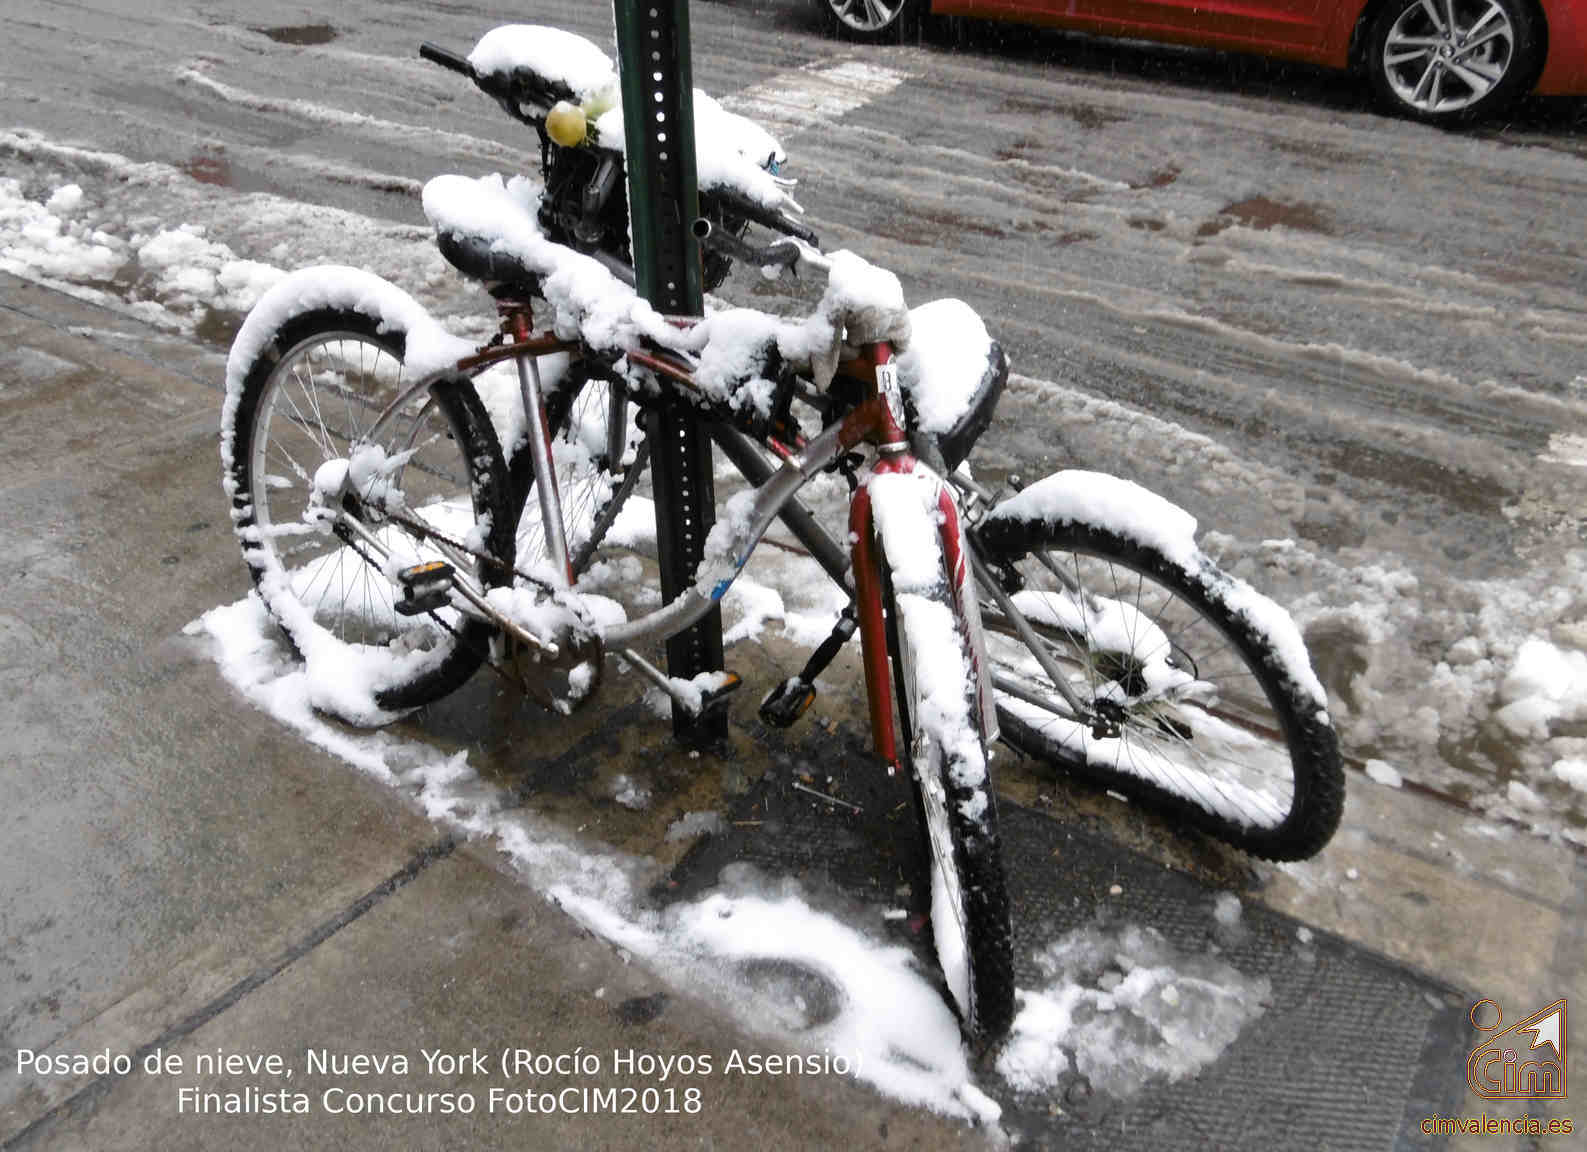 2019_5-6-06-Posado de nieve, Nueva York (Rocío Hoyos Asensio)-13x18.jpg